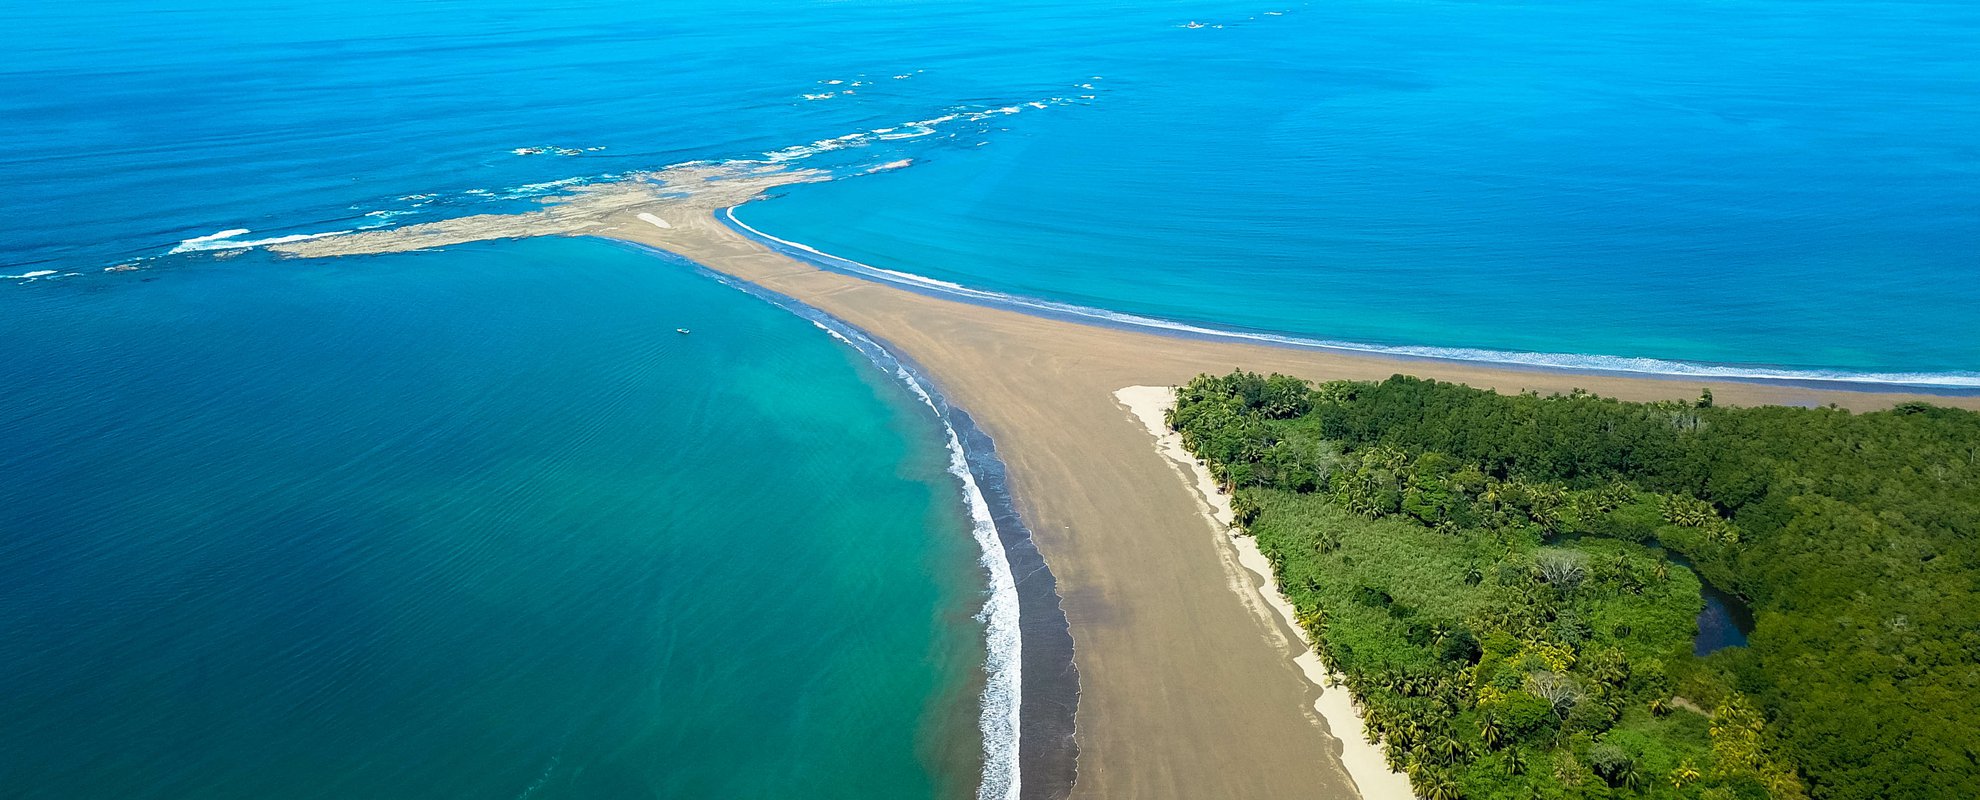 Under resan genom Costa Rica bor du vid stranden som ser ut som en valfena